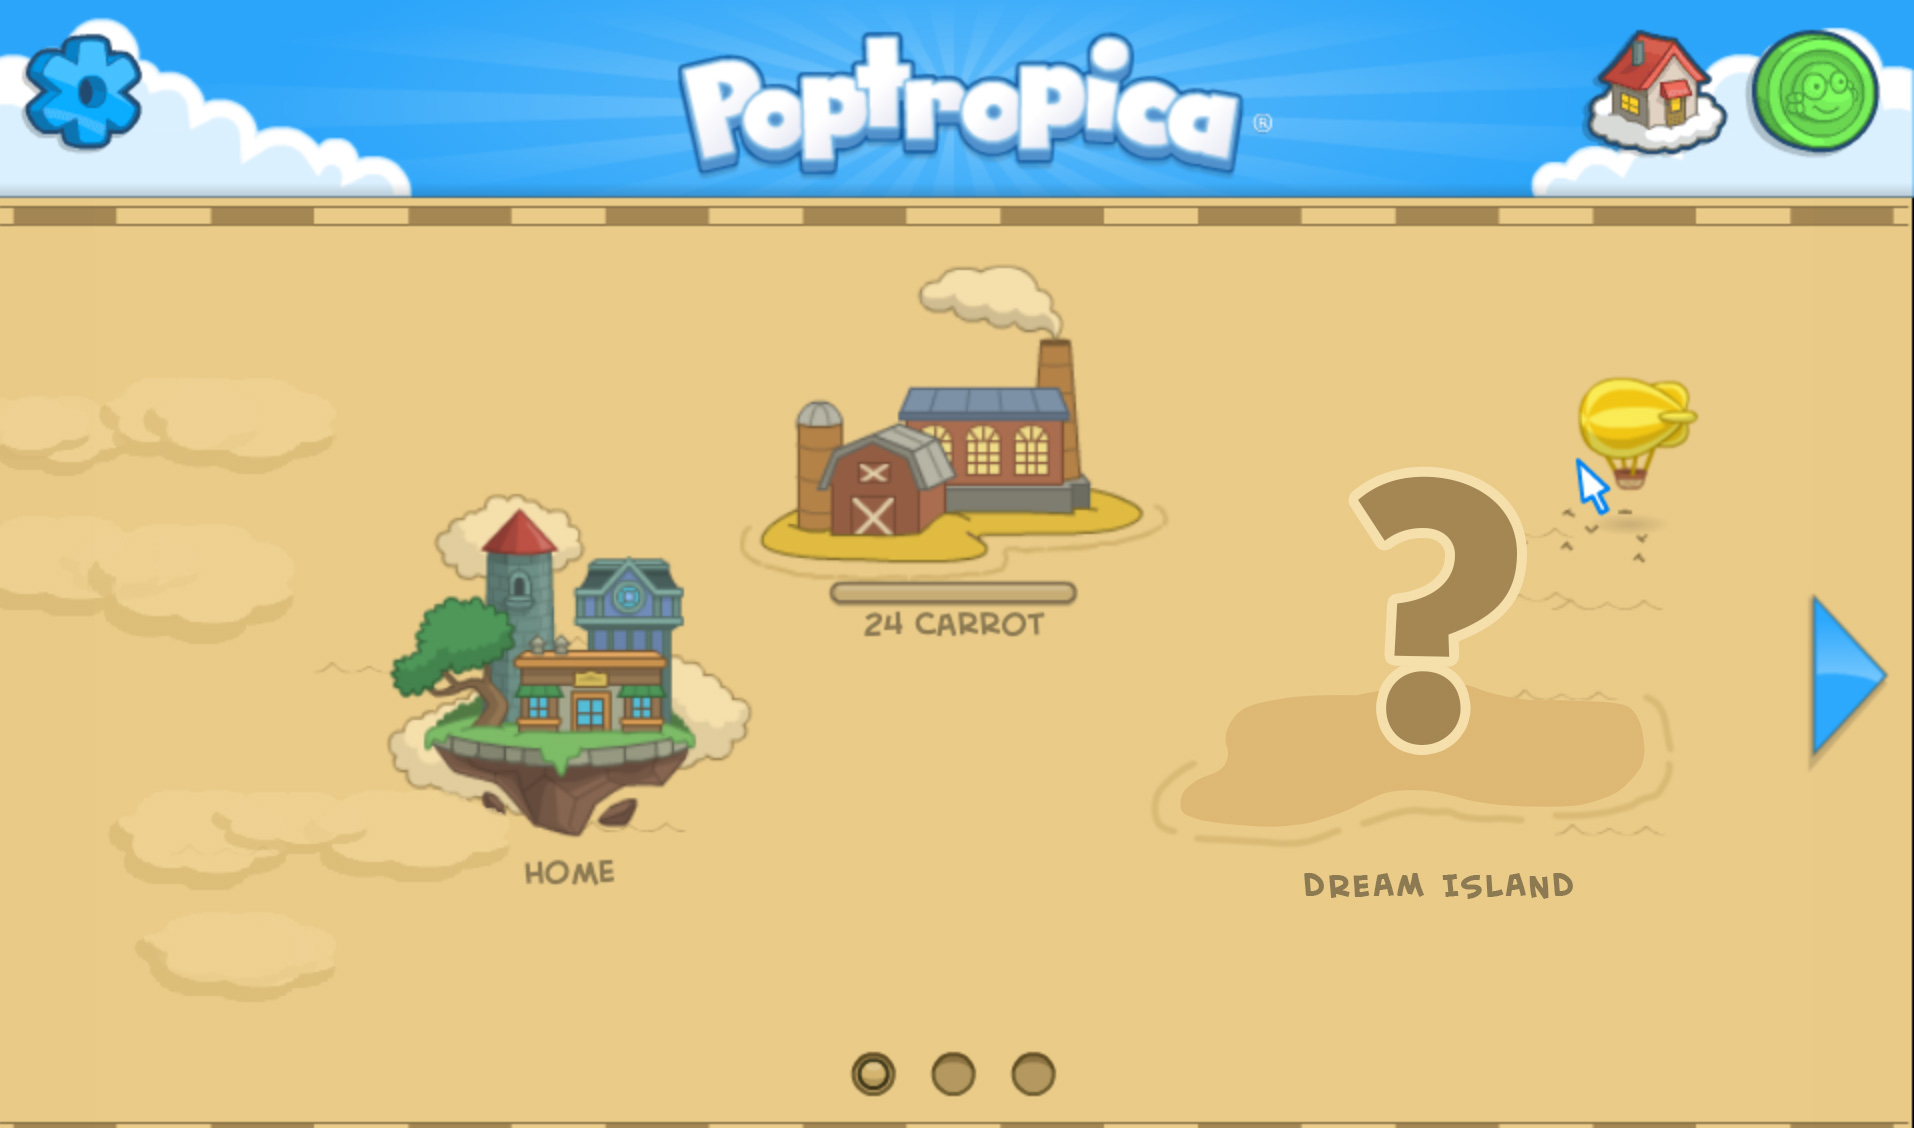 Design Your Dream Island Contest! 💫 poptropica